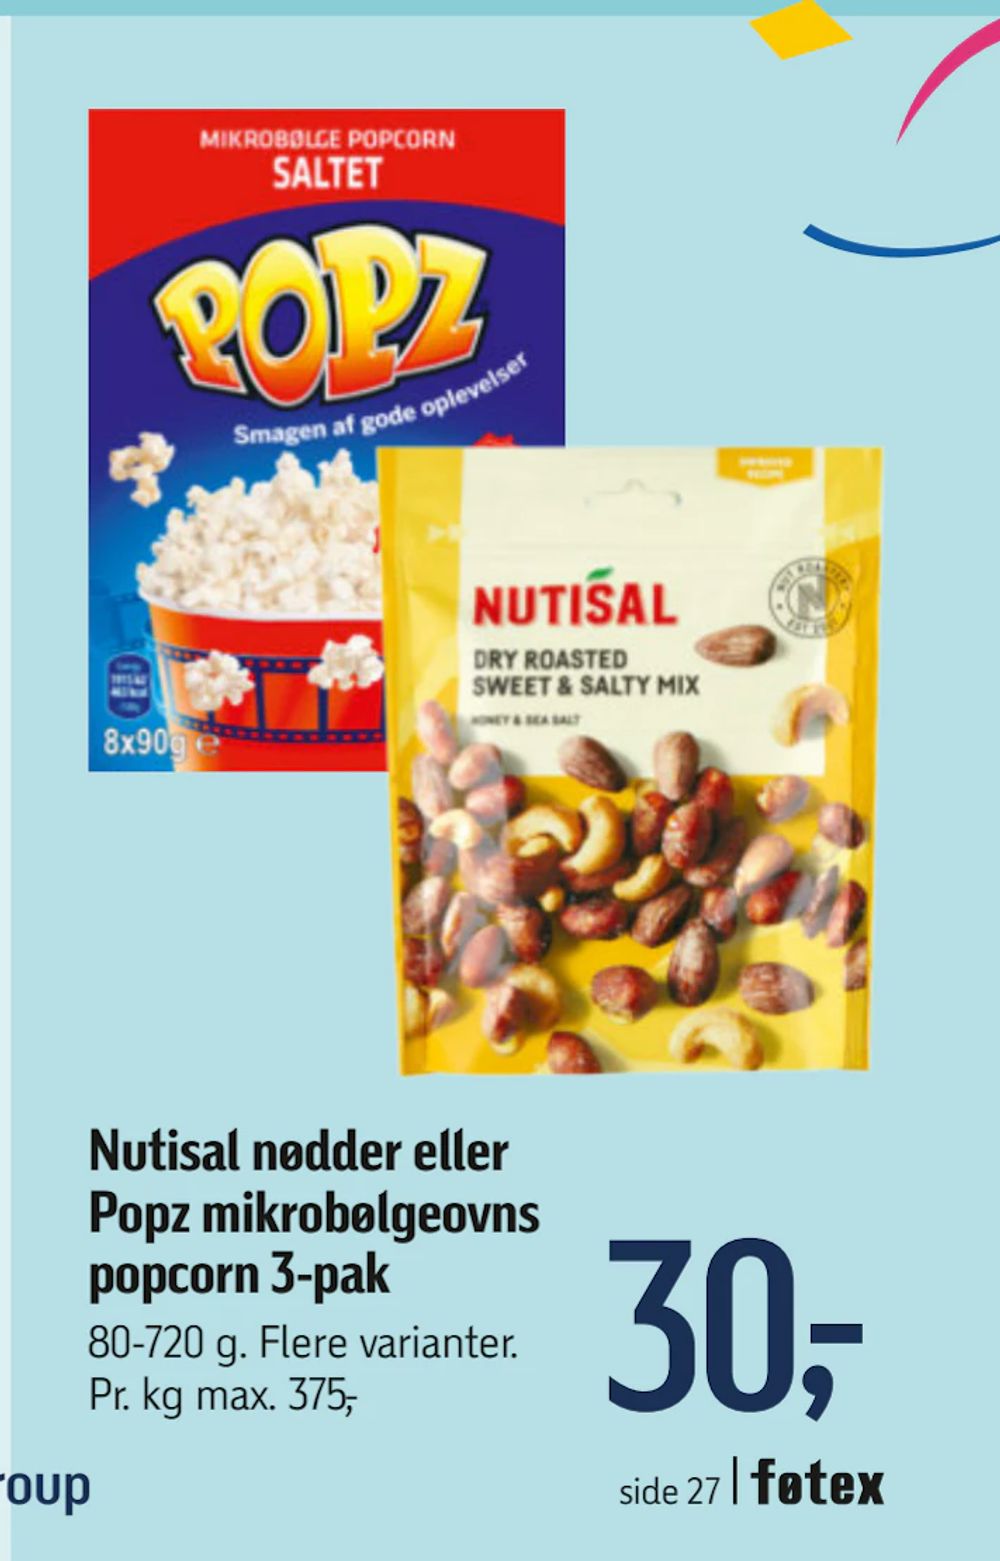 Tilbud på Nutisal nødder eller Popz mikrobølgeovns popcorn 3-pak fra føtex til 30 kr.